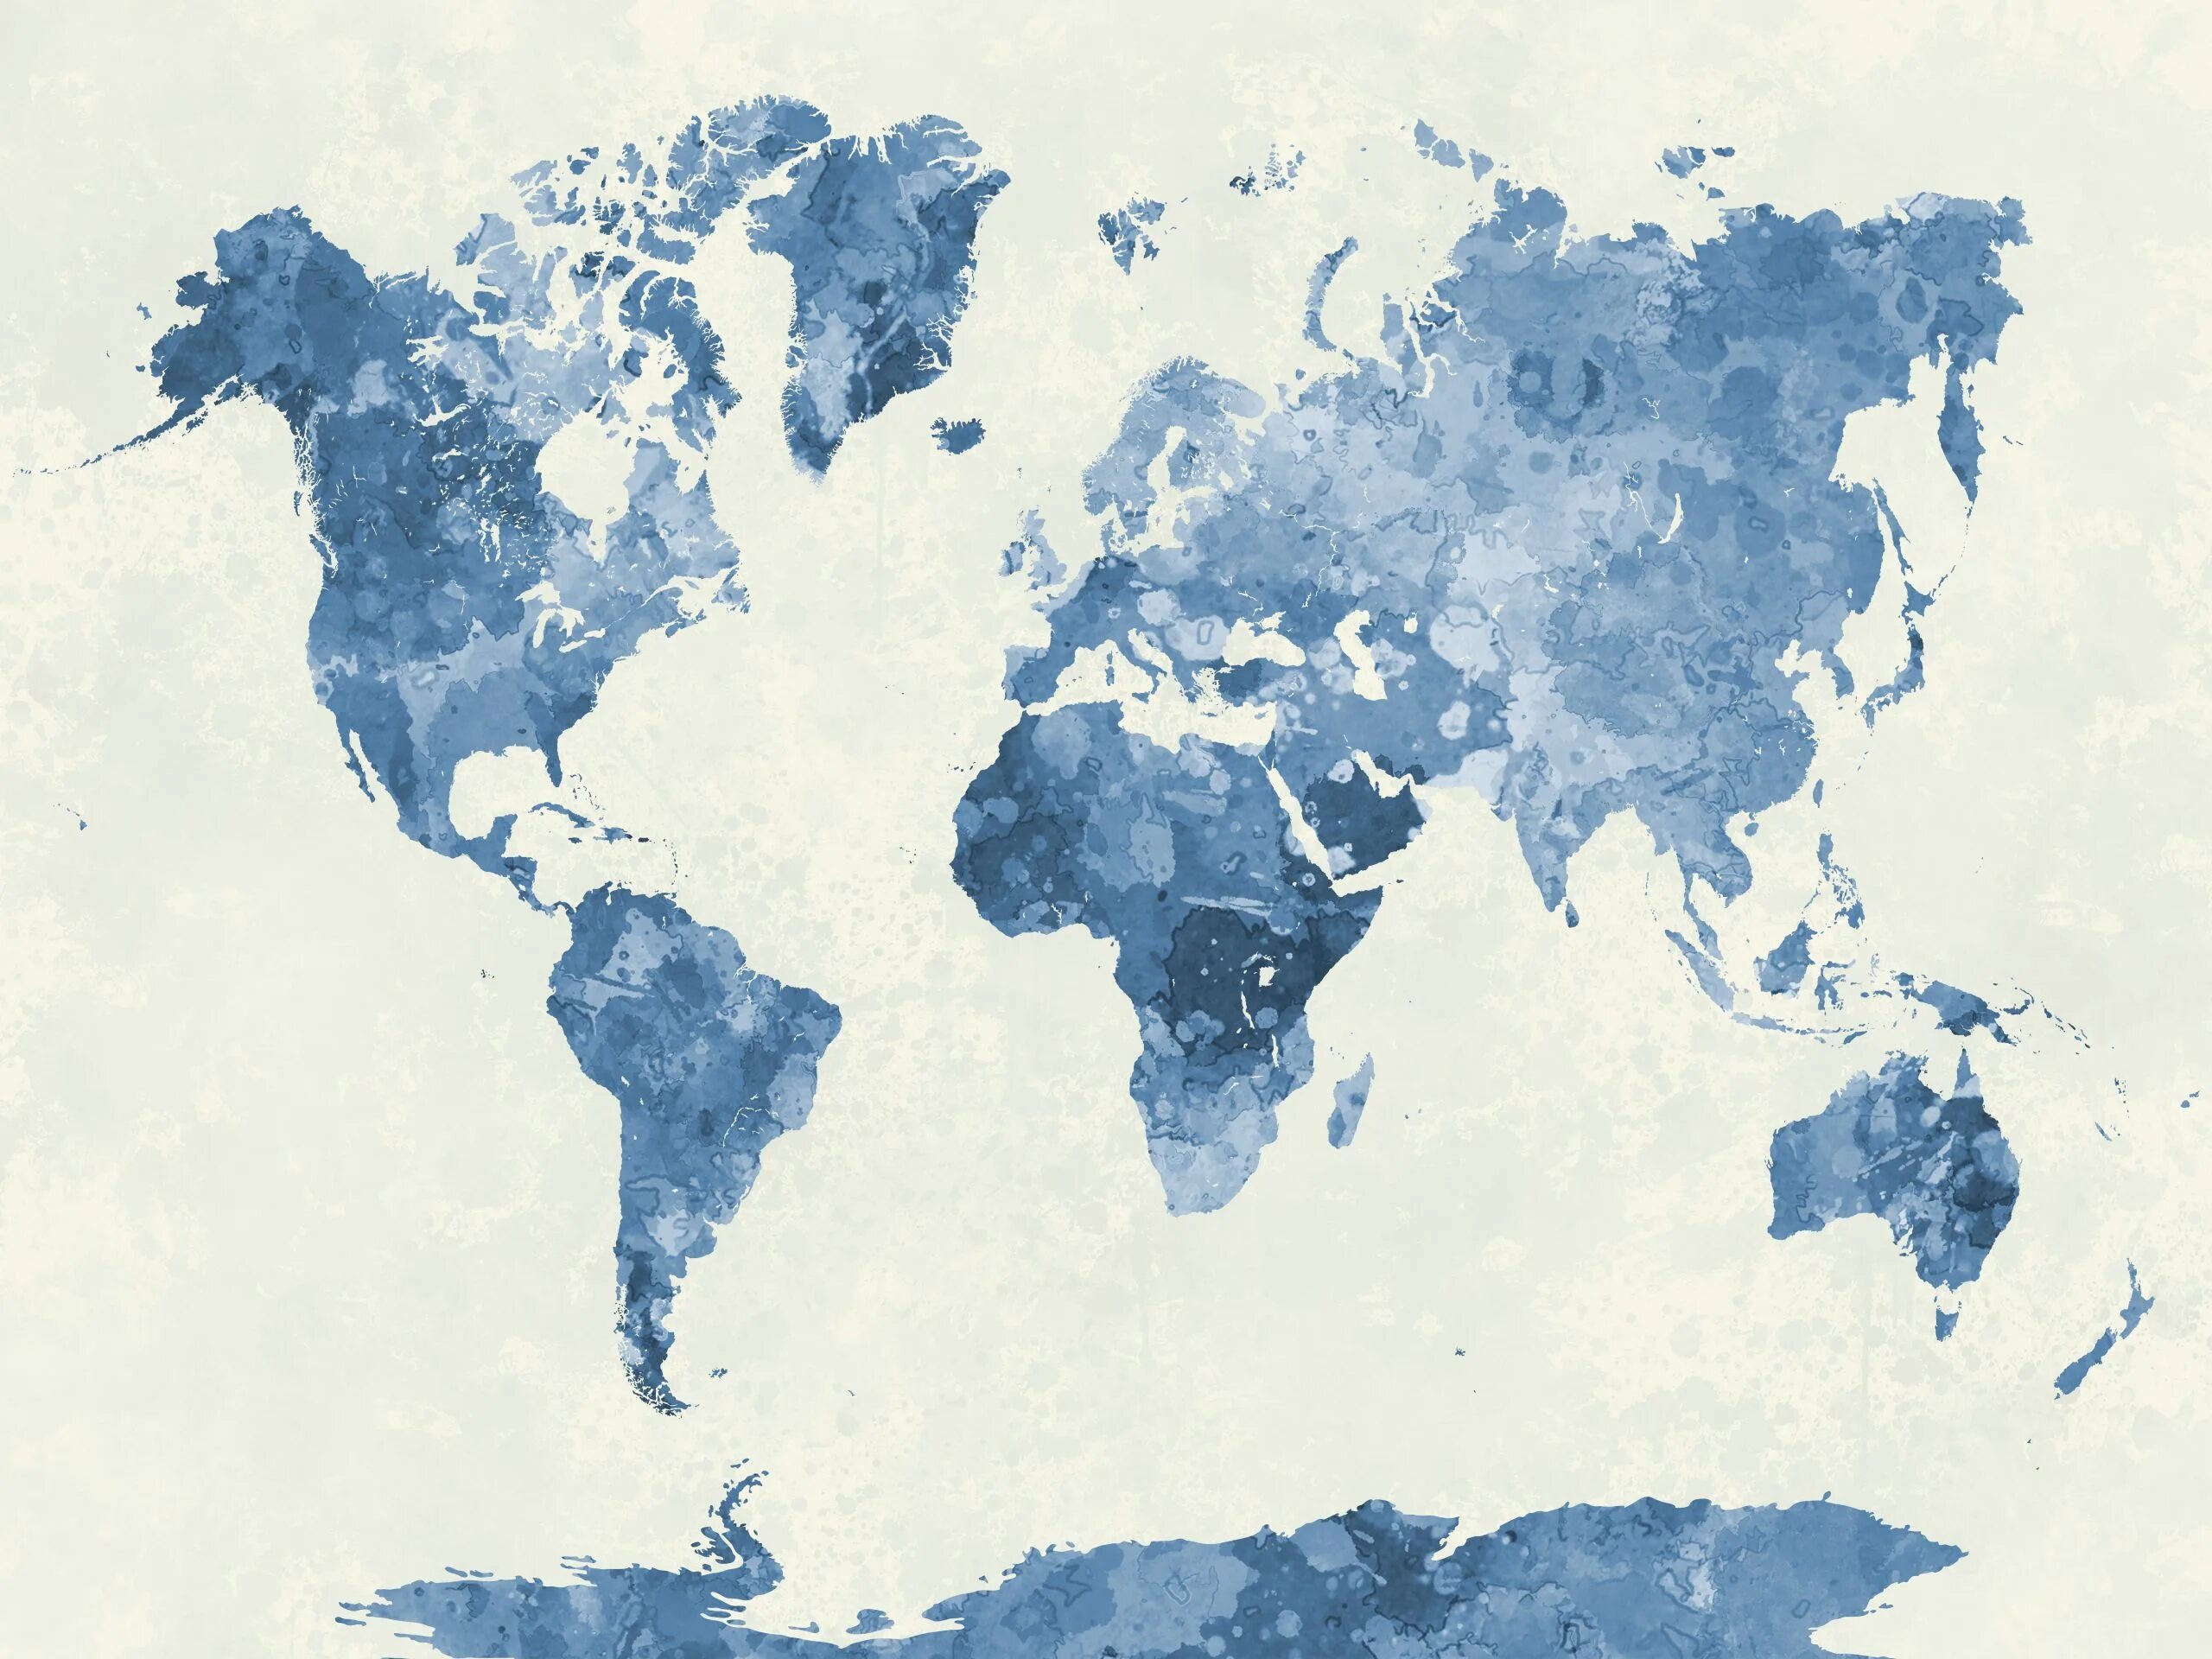 Карта цвета синего. Карта мира. Карта мира стилизованная. Карта мира на синем фоне. Карта мира синяя.